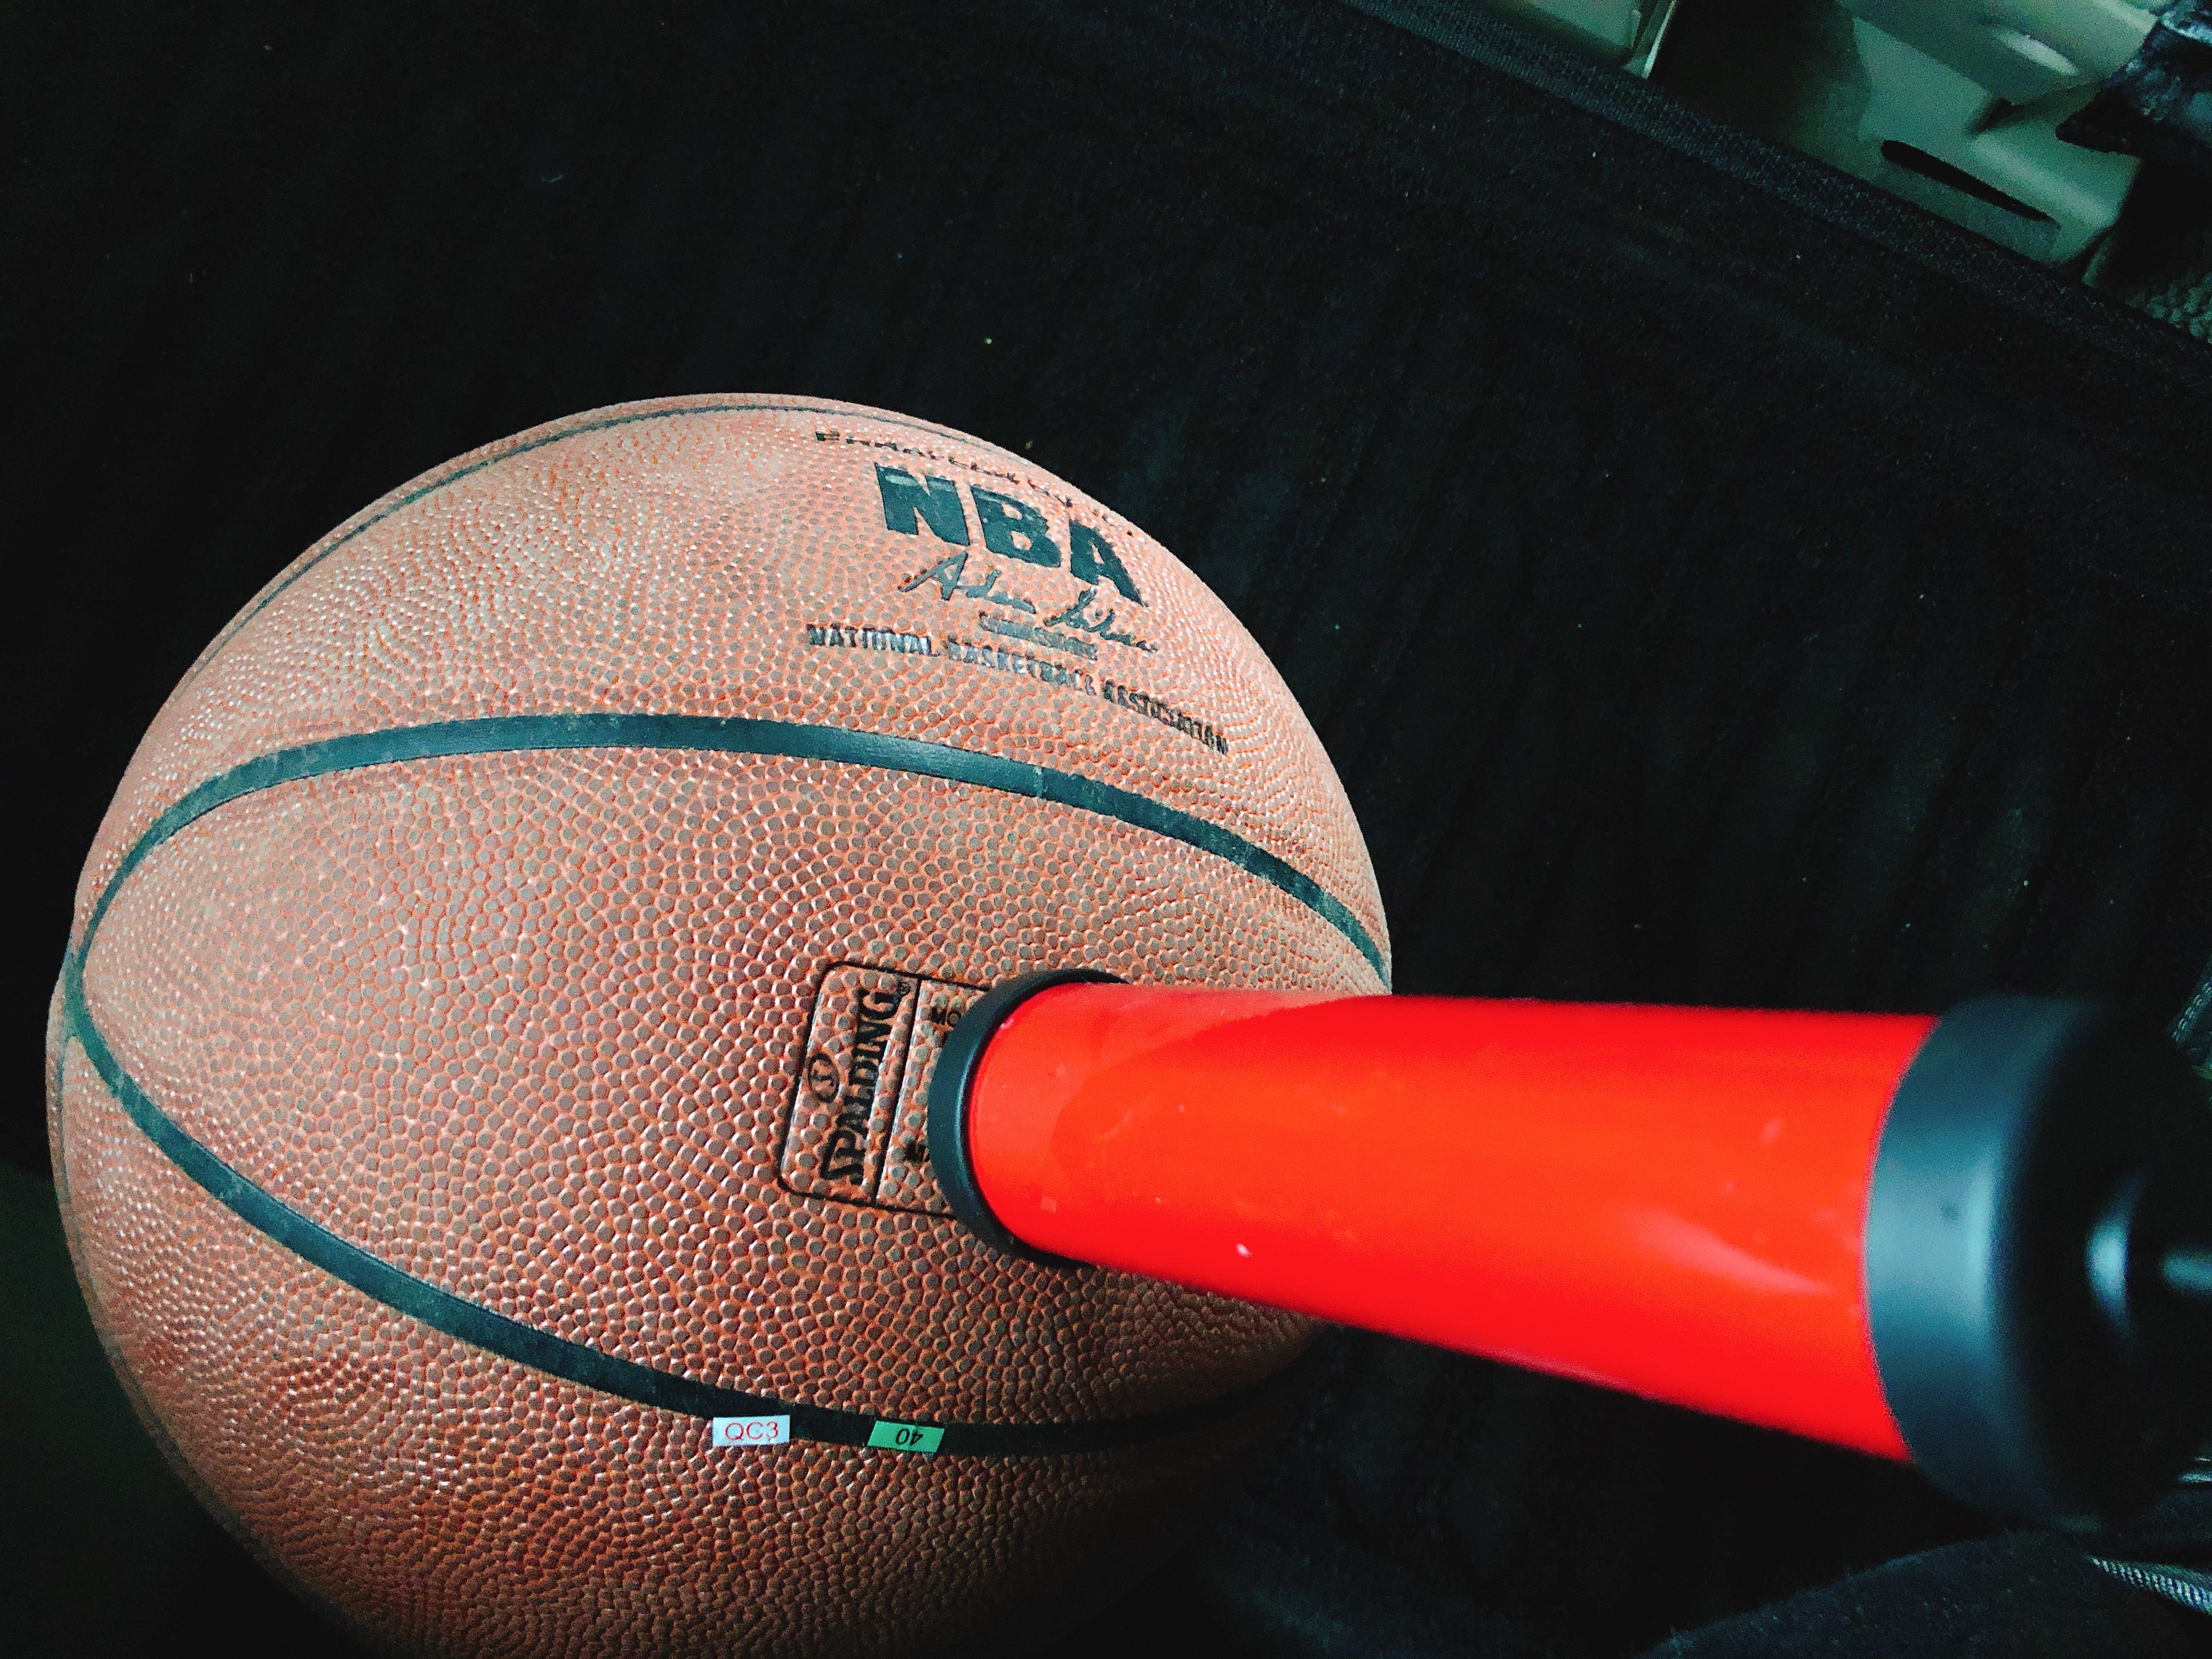 ハンドポンプ 空気入れ ボール用空気入れ 針付き サッカー バスケ